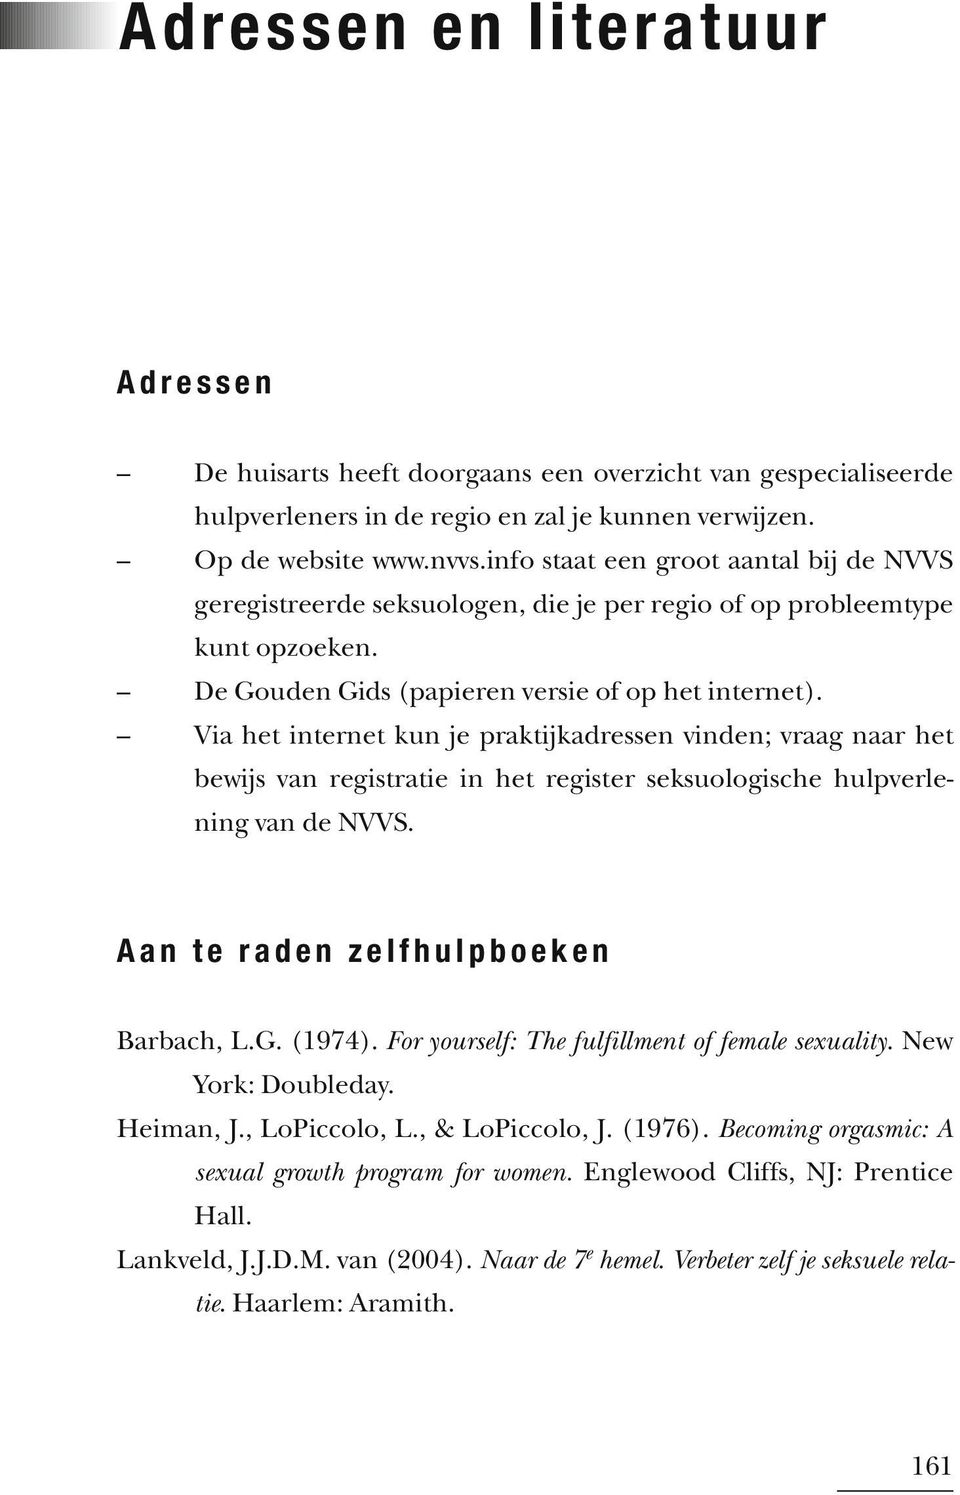 Via het internet kun je praktijkadressen vinden; vraag naar het bewijs van registratie in het register seksuologische hulpverlening van de NVVS. Aan te raden zelfhulpboeken Barbach, L.G. (1974).